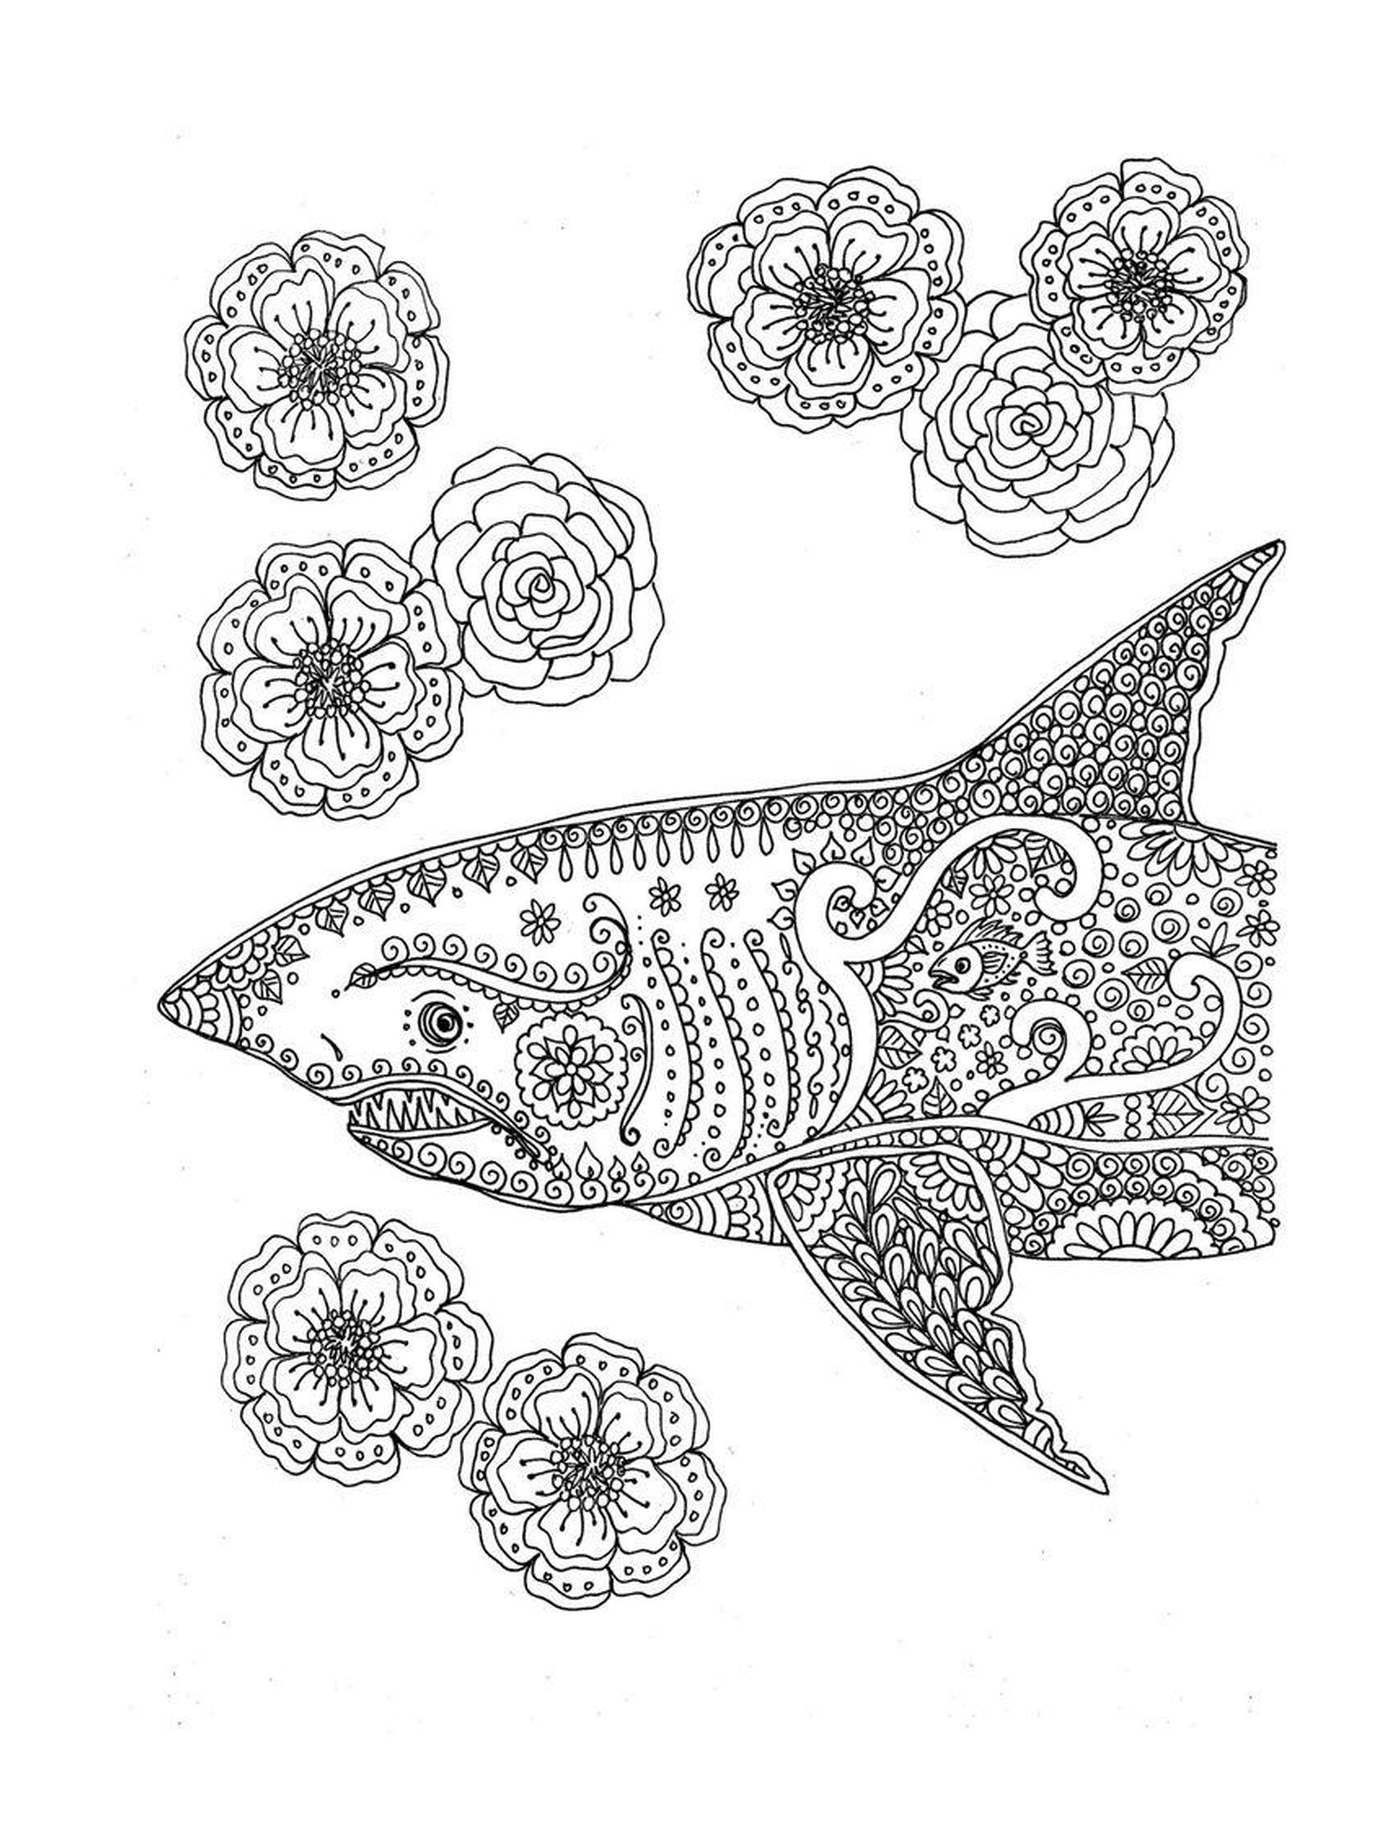  Tubarão decorado com motivos florais 